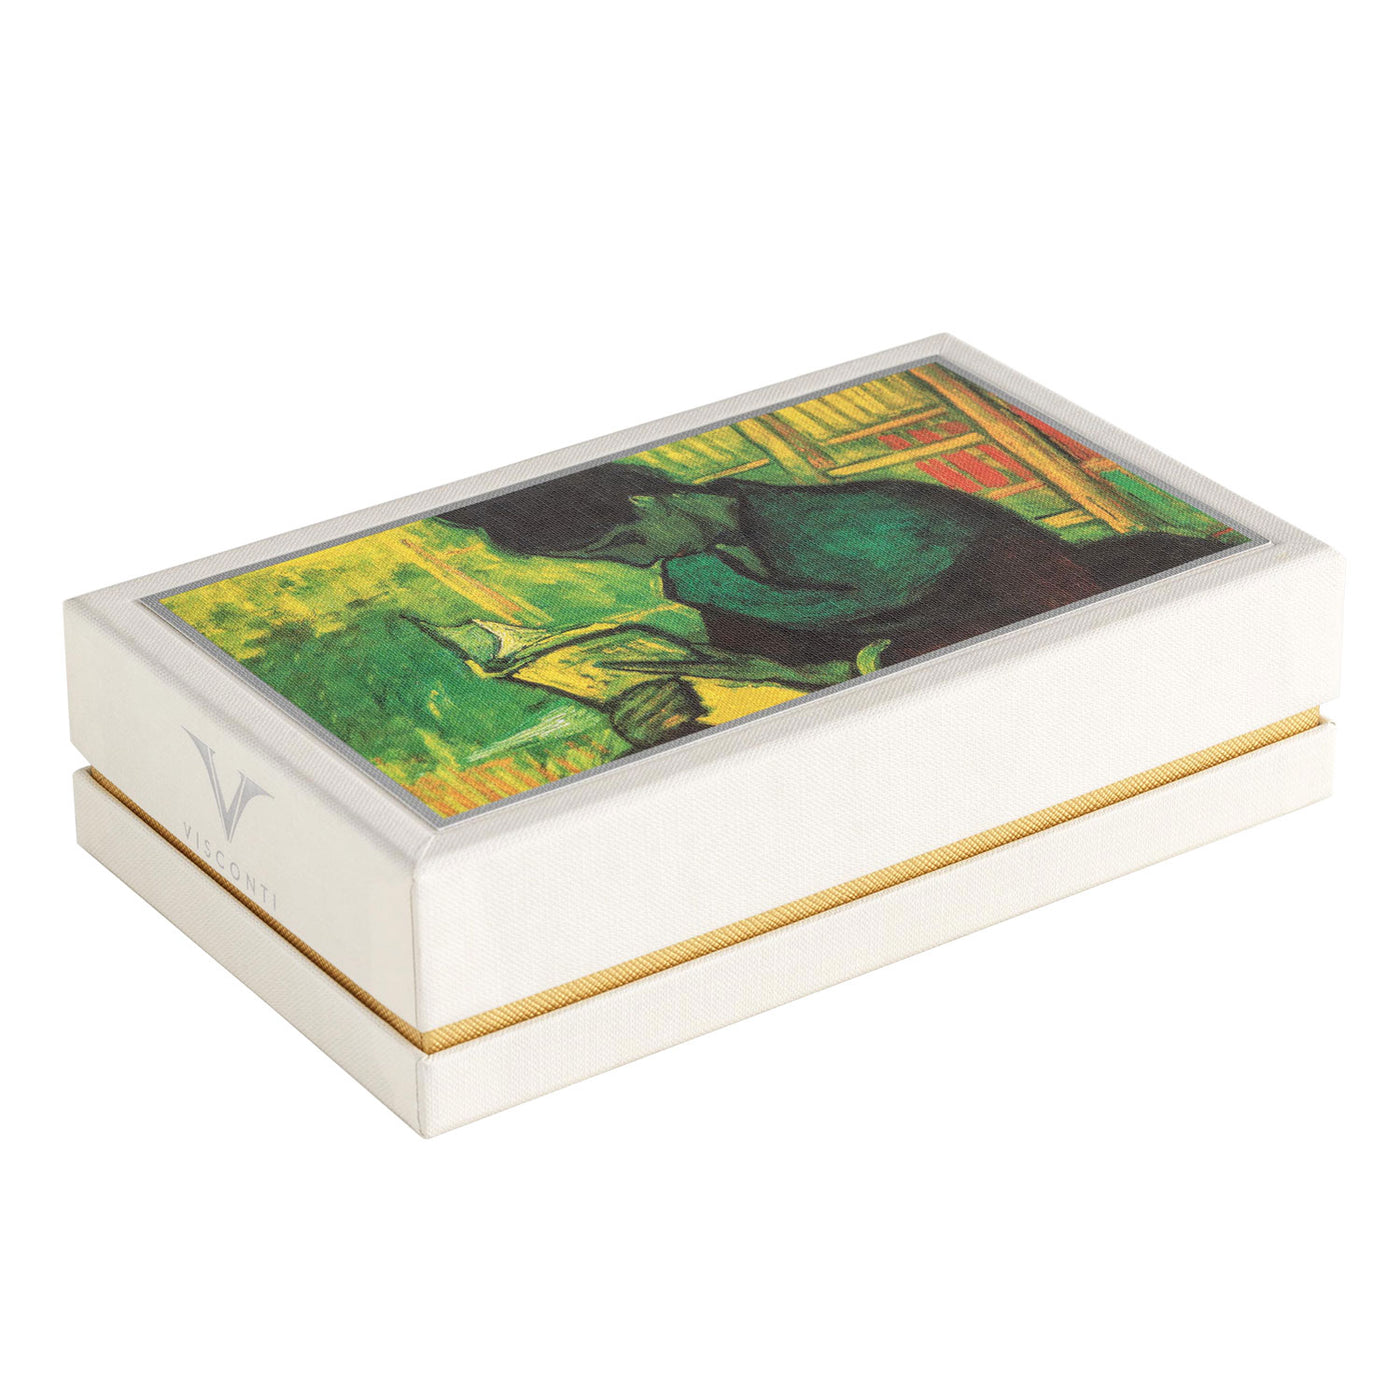 Visconti Van Gogh Ball Pen - The Novel Reader (Special Edition) 6